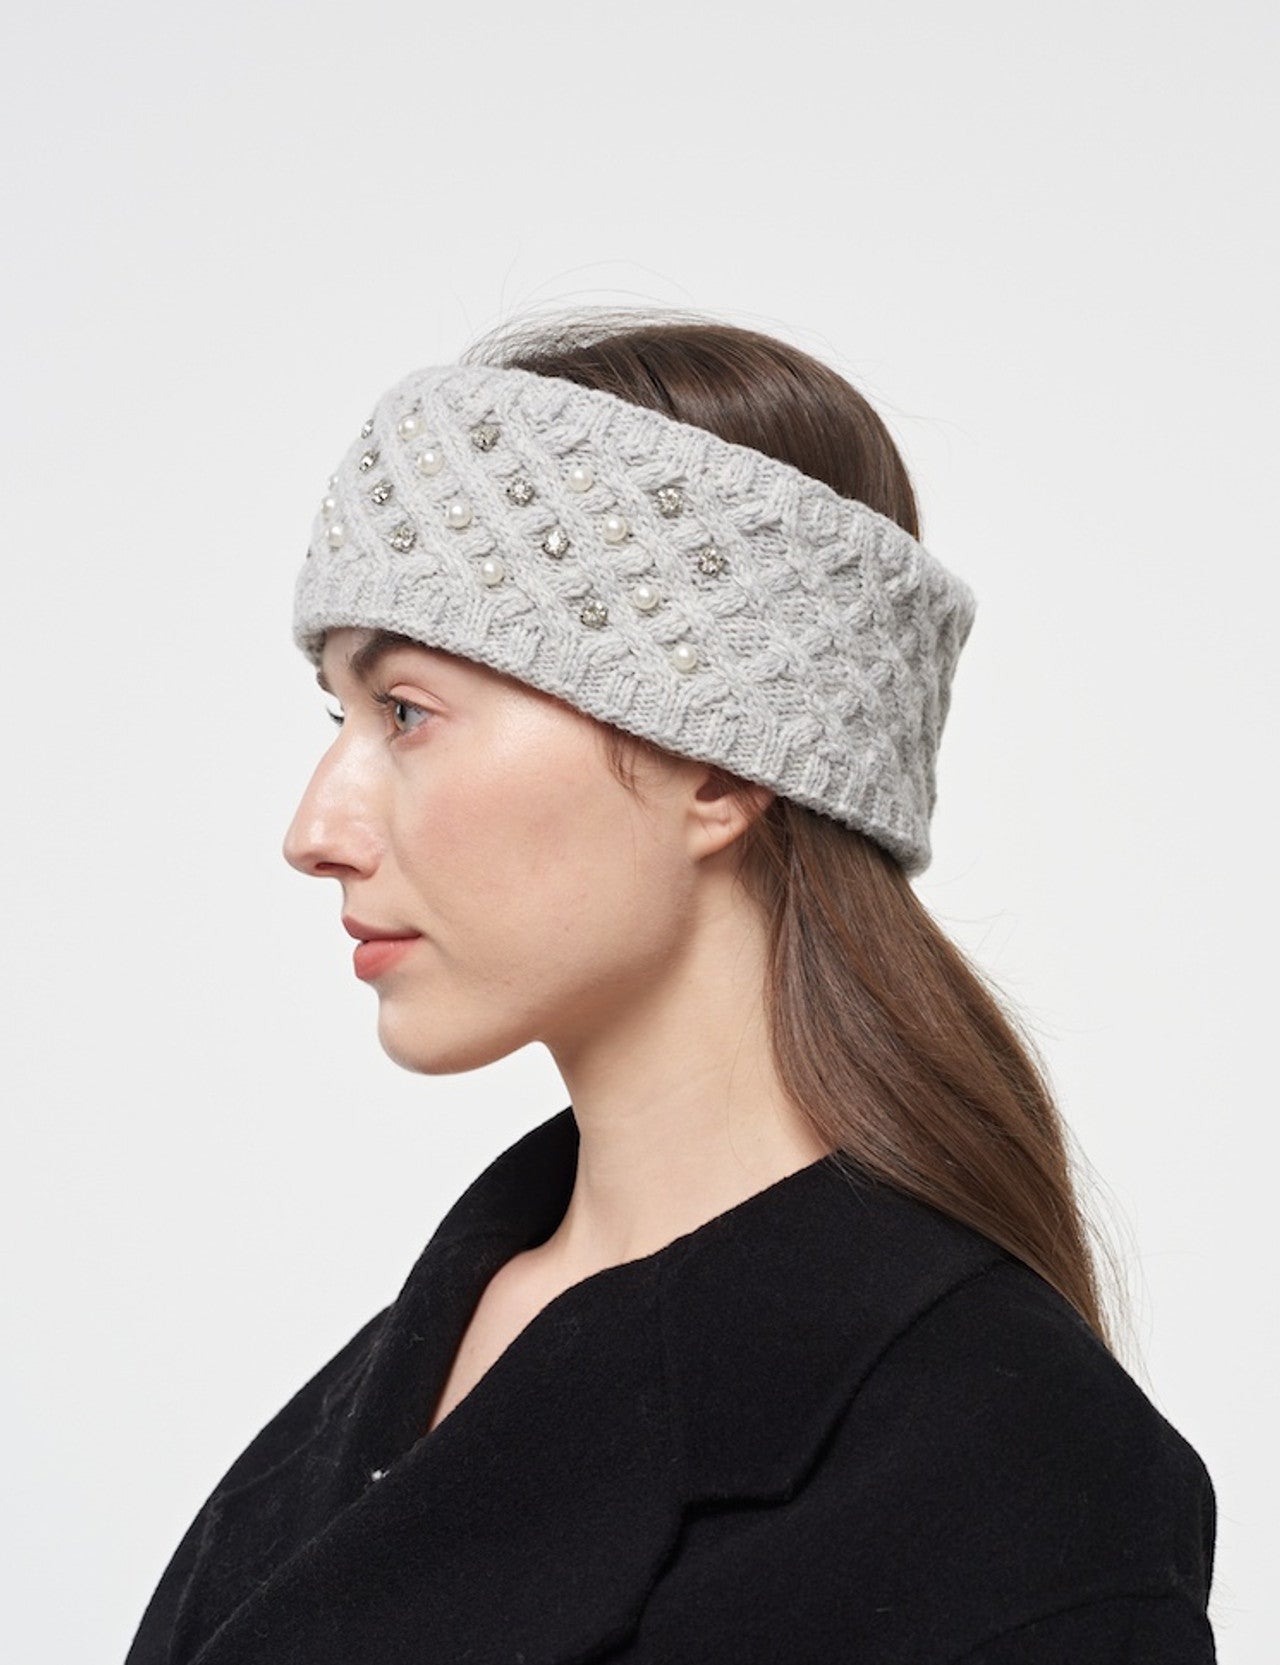 Knit Headband: